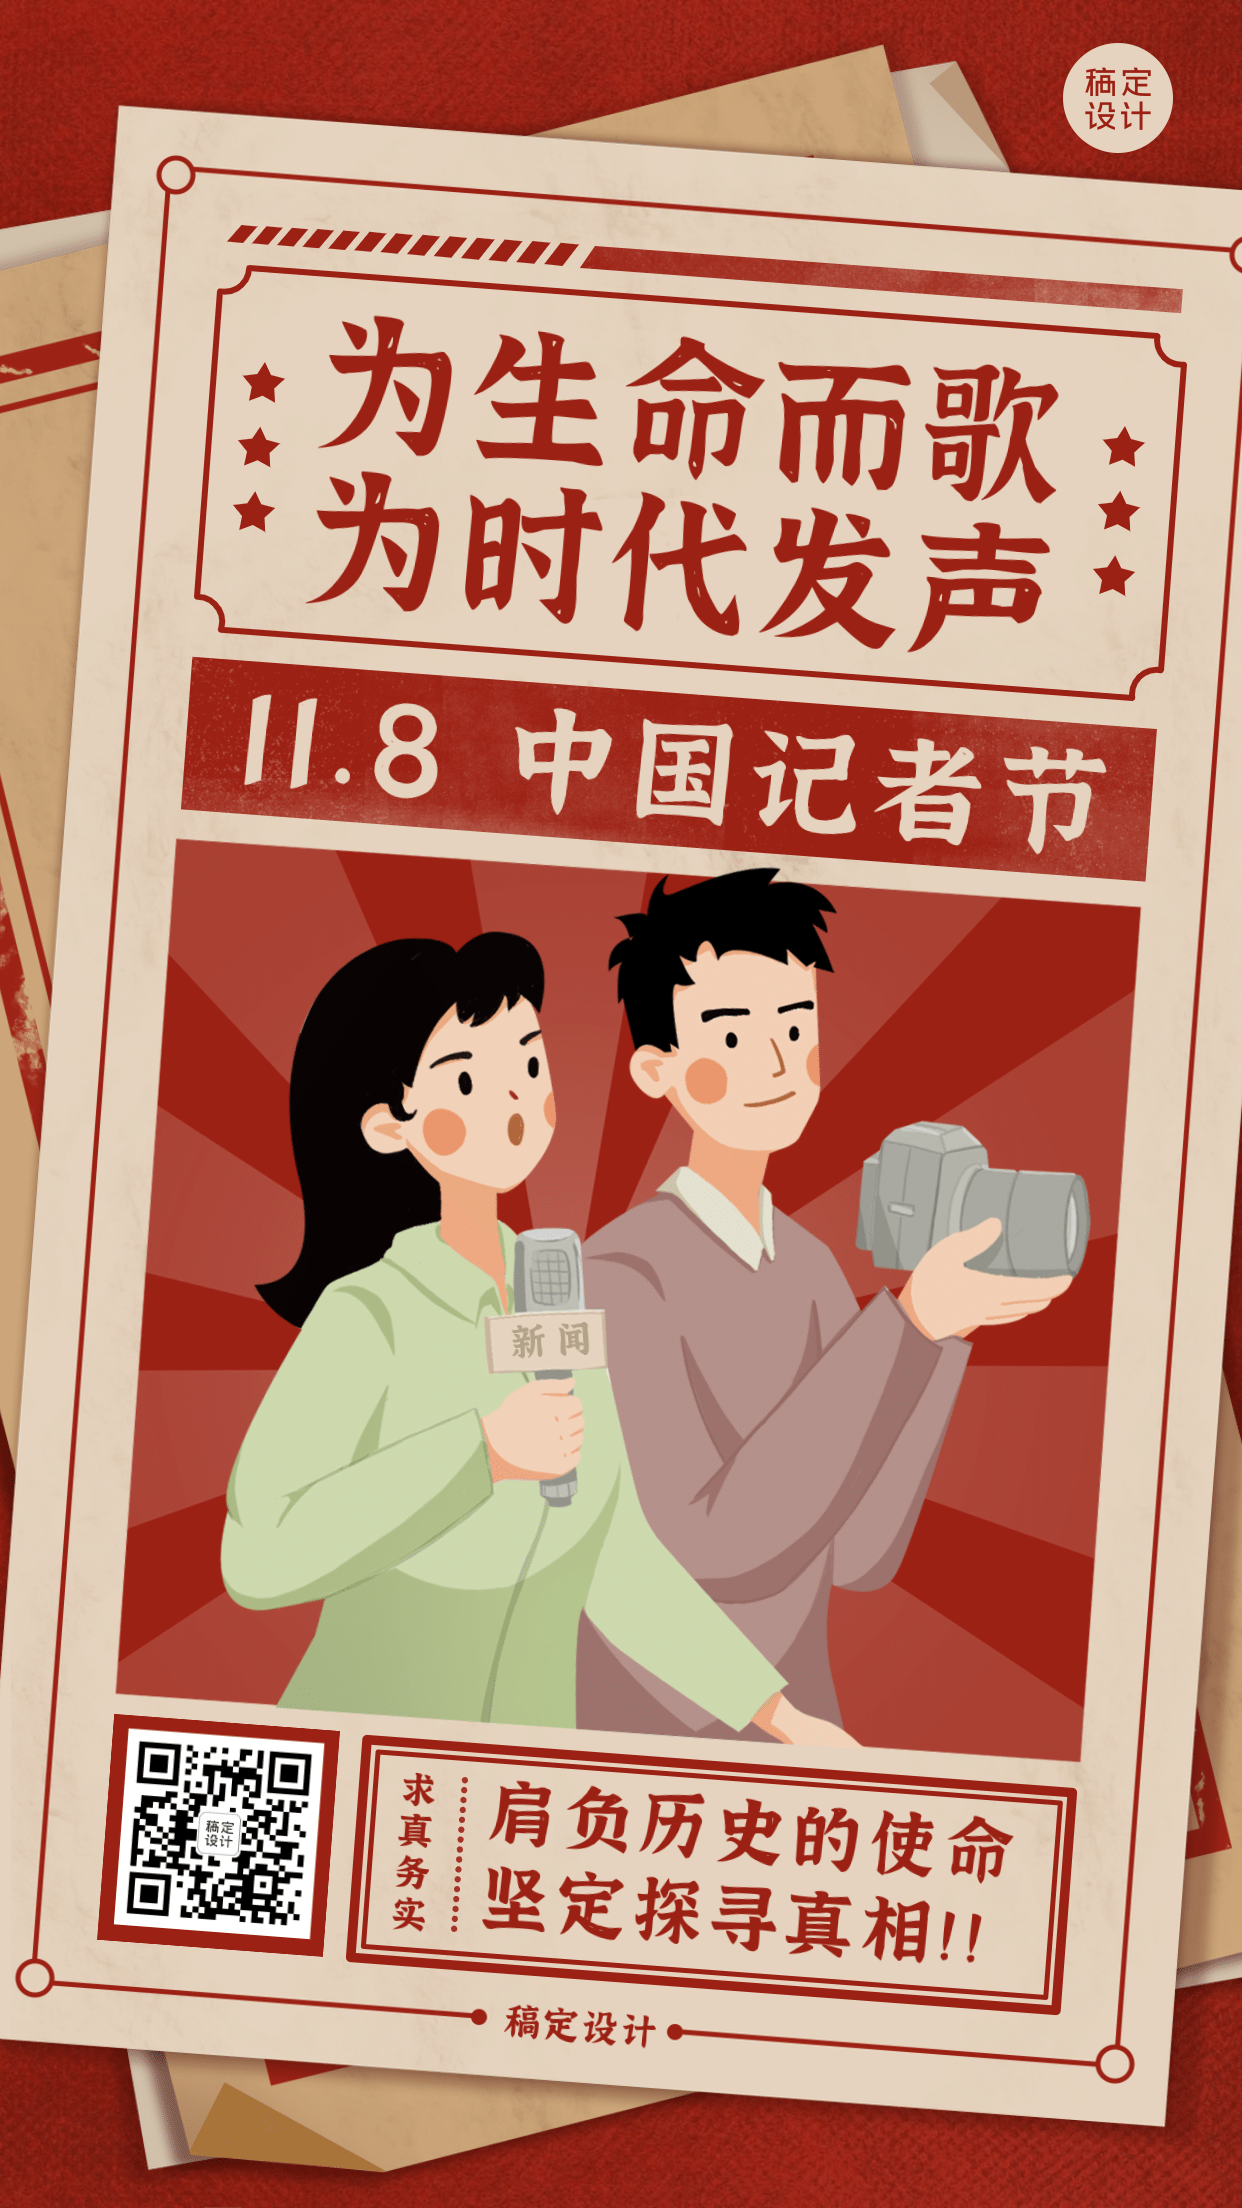 中国记者节节日祝福复古手绘插画手机海报